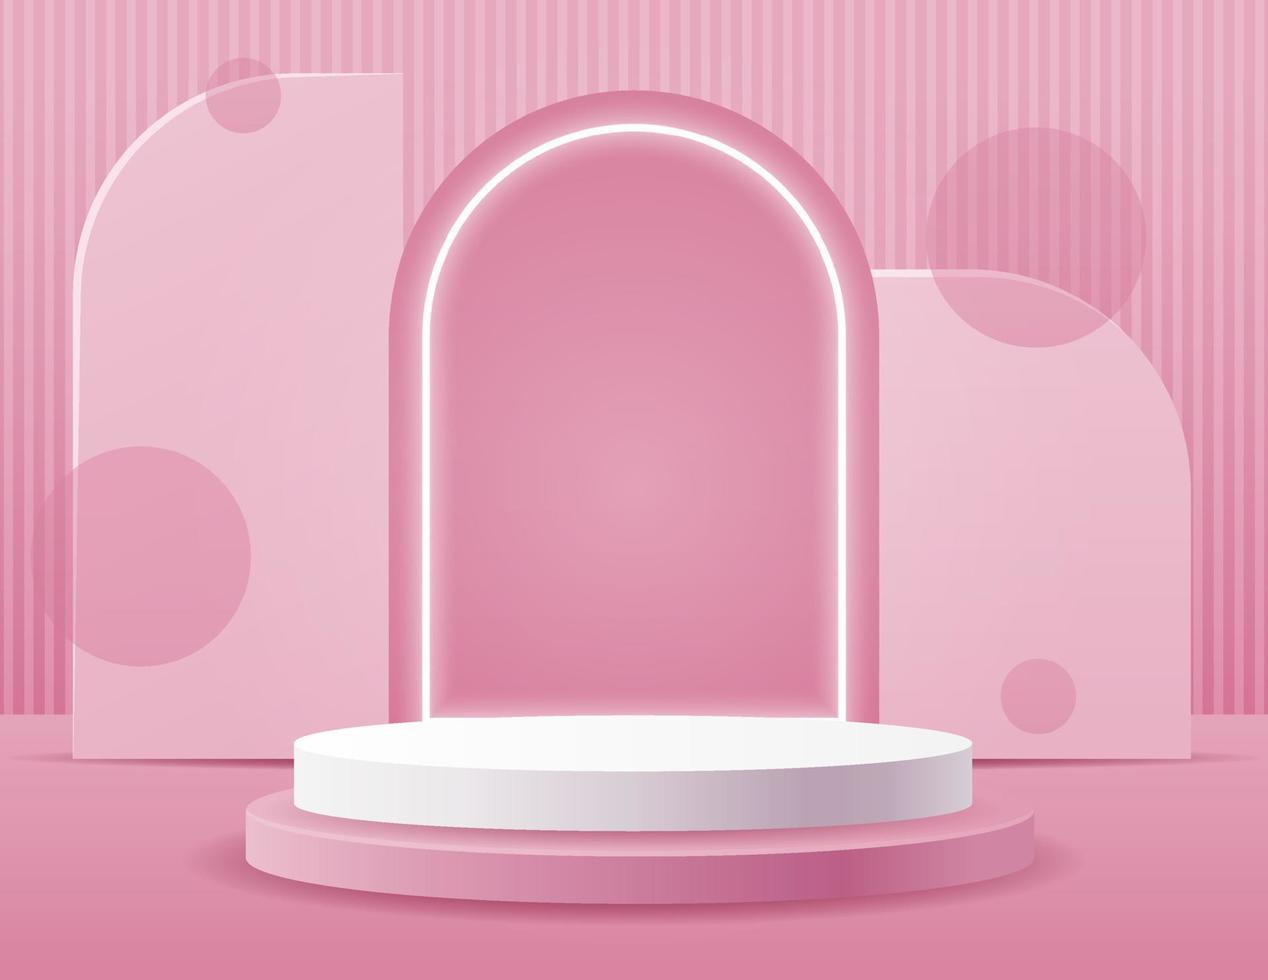 pódio de cilindro em fundo rosa. apresentação do produto, maquete, mostrar produto cosmético, pódio, pedestal de palco ou plataforma. fundo de cena abstrata. ilustração vetorial vetor